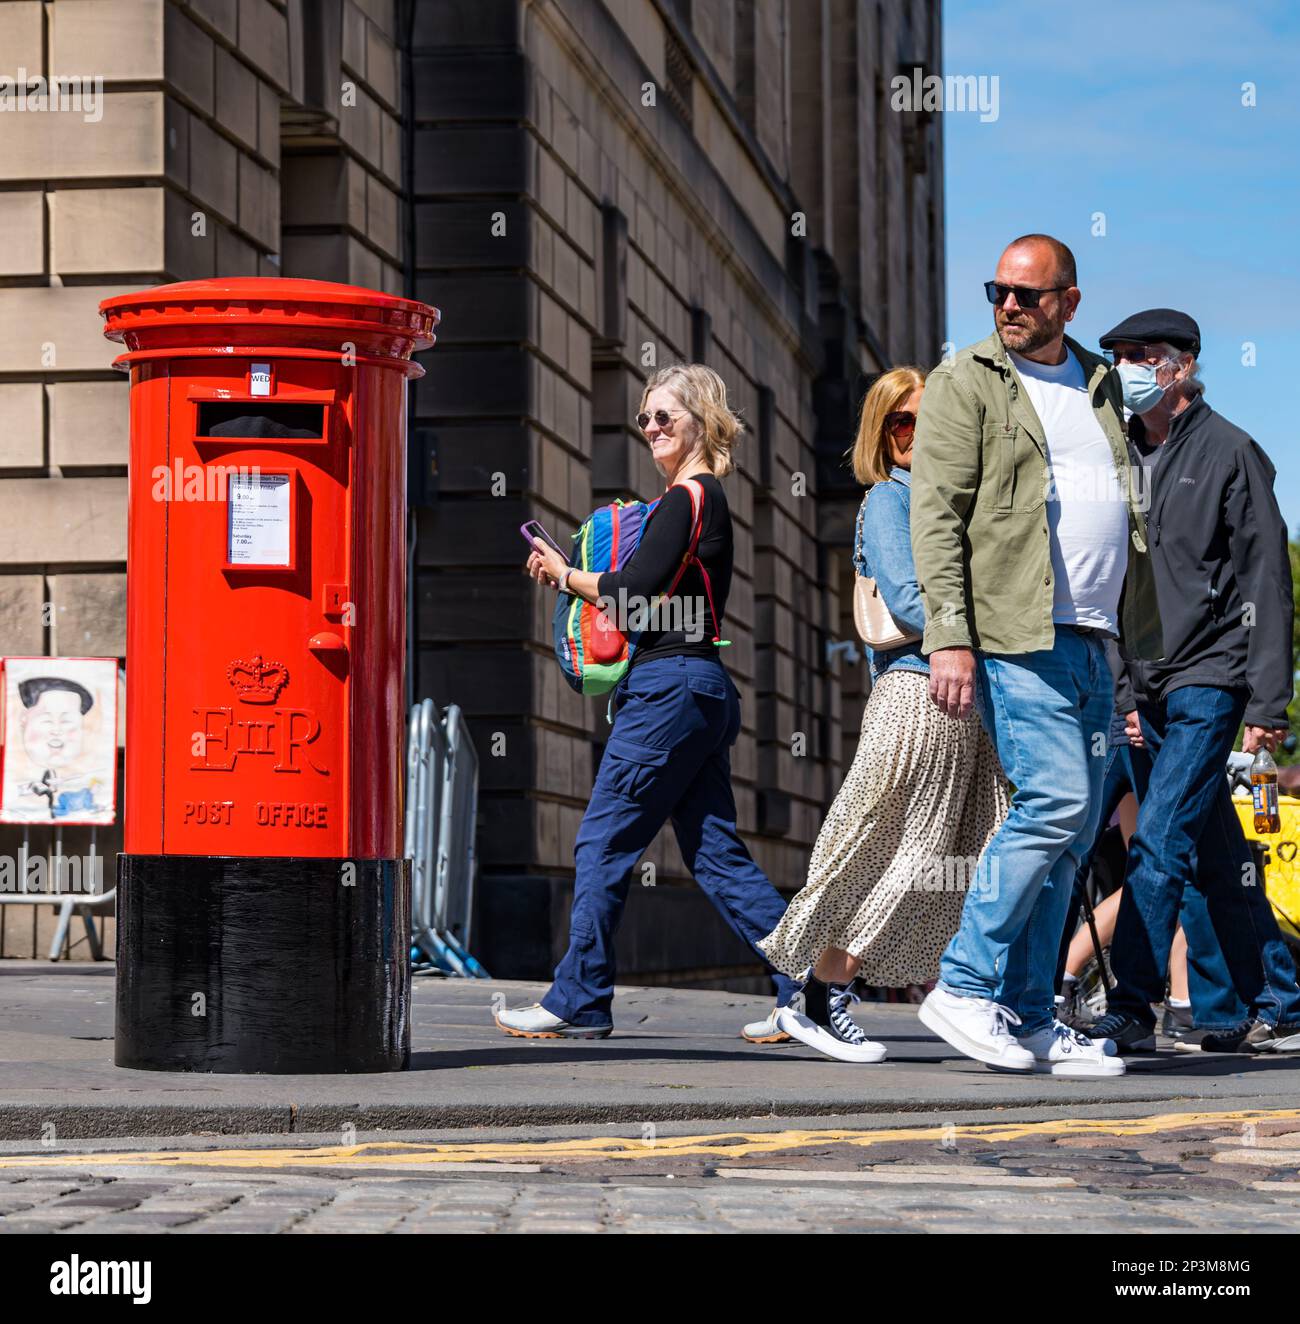 Les gens qui marchent devant et qui sont surpris par une fausse boîte postale parlante pendant le festival Fringe, Royal Mile, Édimbourg, Écosse, Royaume-Uni Banque D'Images